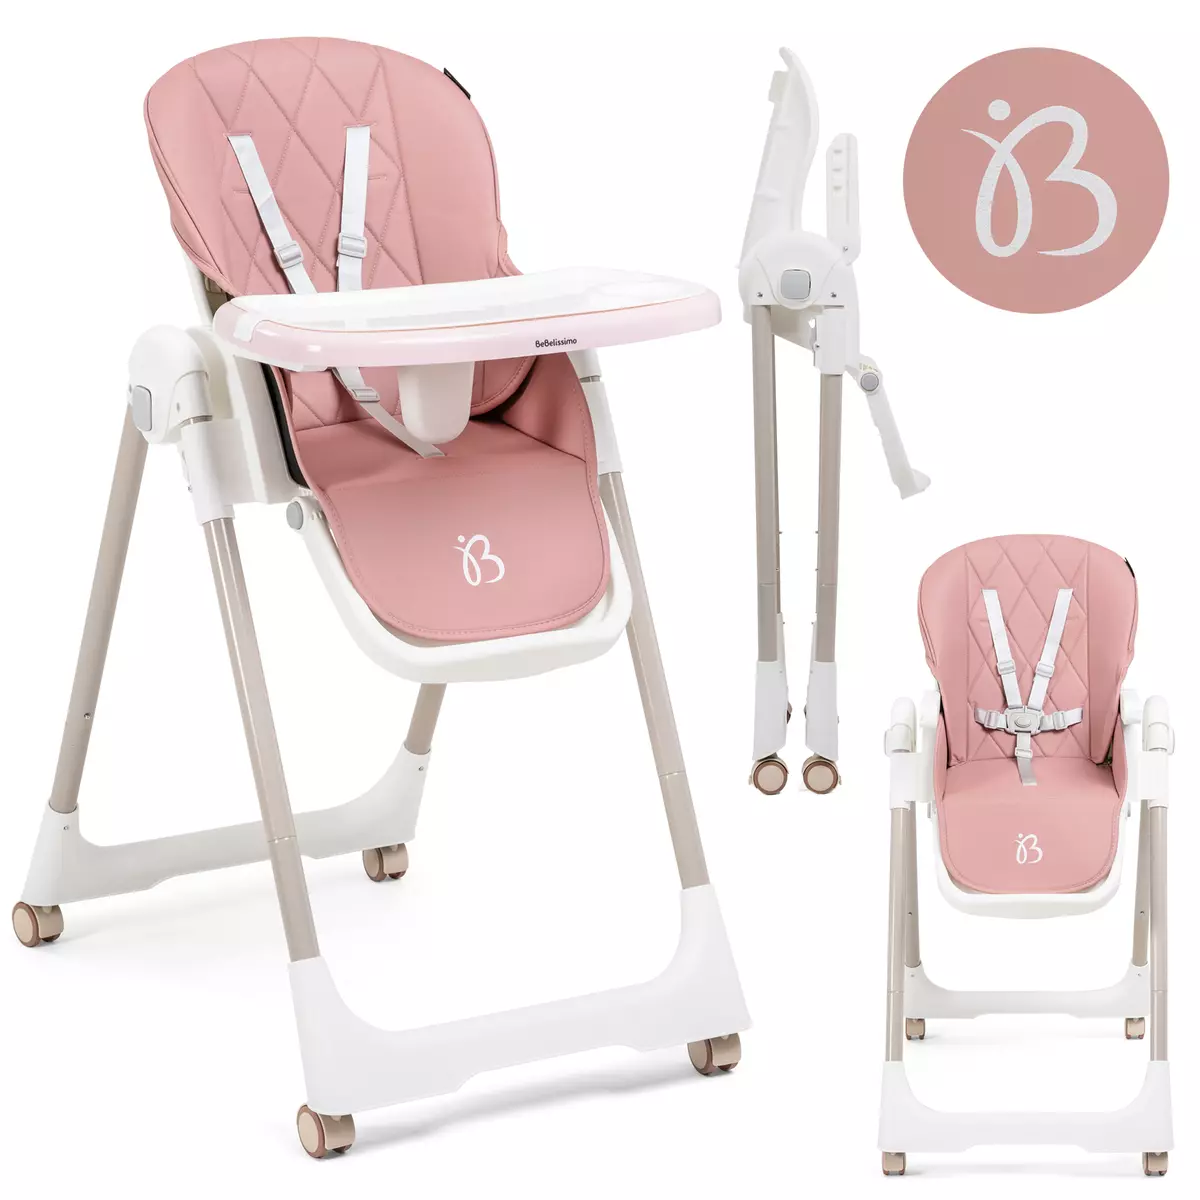 BEBELISSIMO Bebelissimo - Chaise haute évolutive bébé - Pliable - Compacte - Réglable hauteur - De 6 mois à 3 ans (15kg) - rose